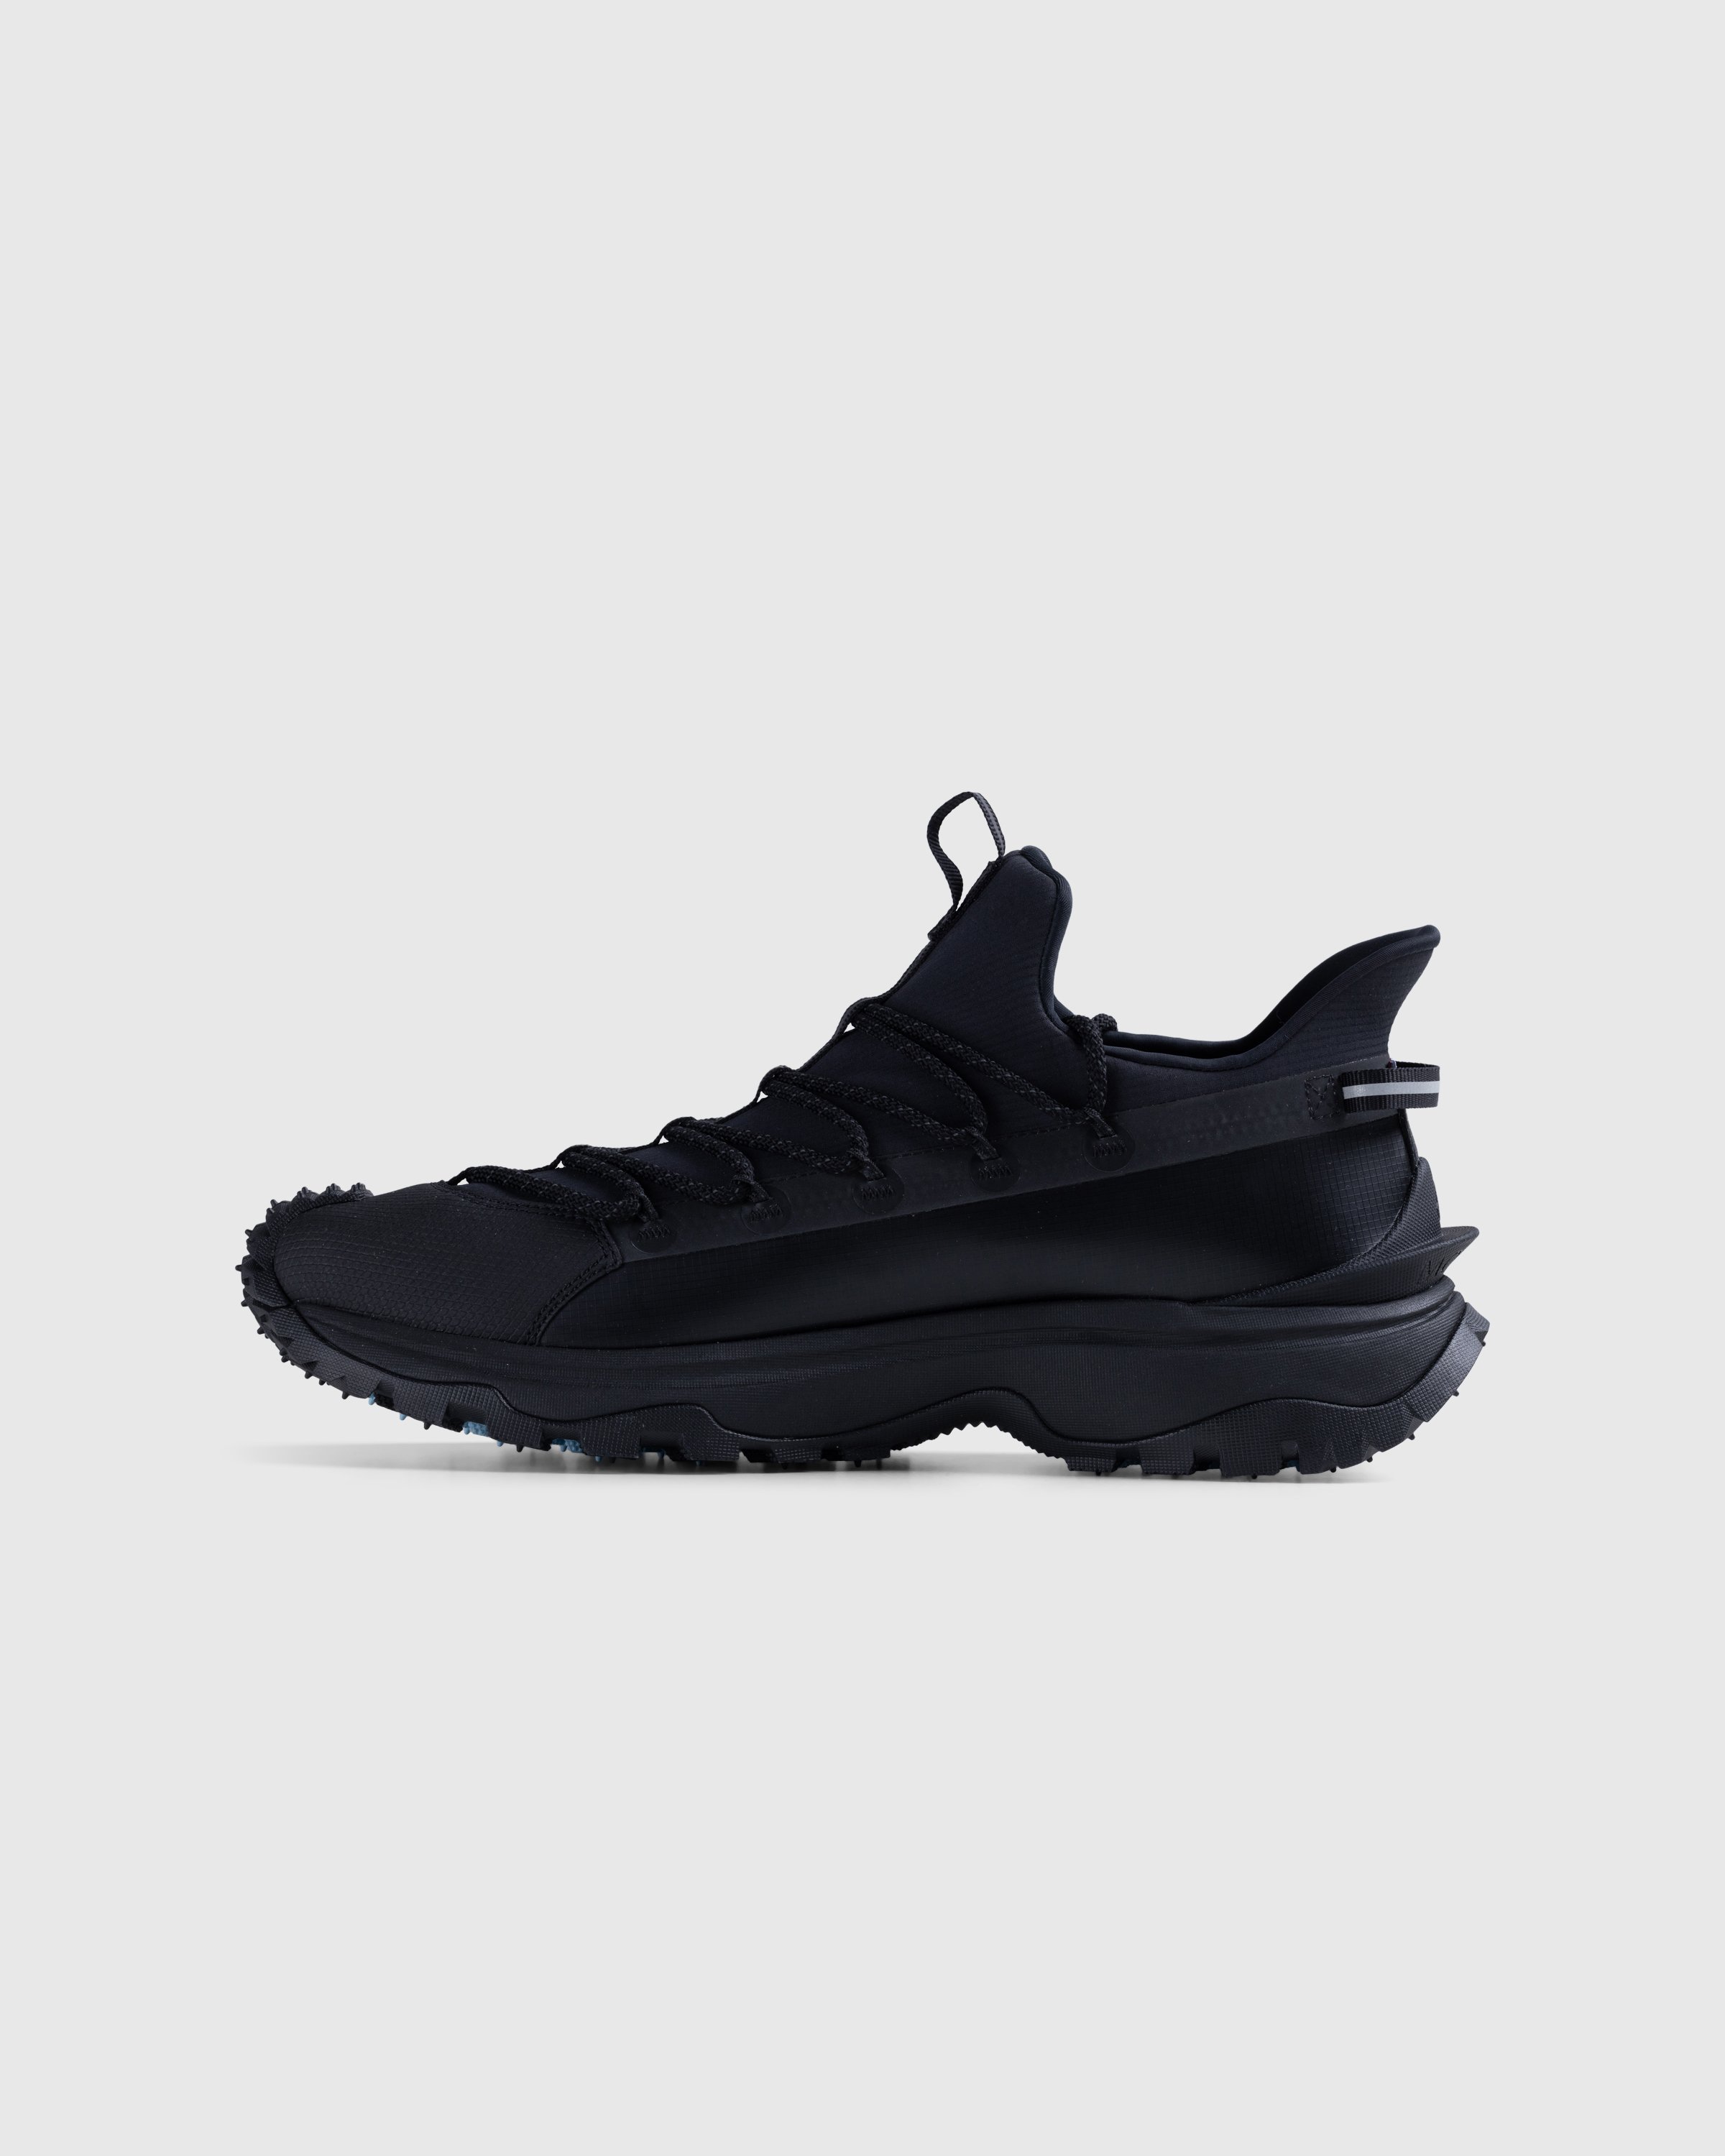 Moncler - Trailgrip Lite 2 Sneakers Black - Footwear - Black - Image 2